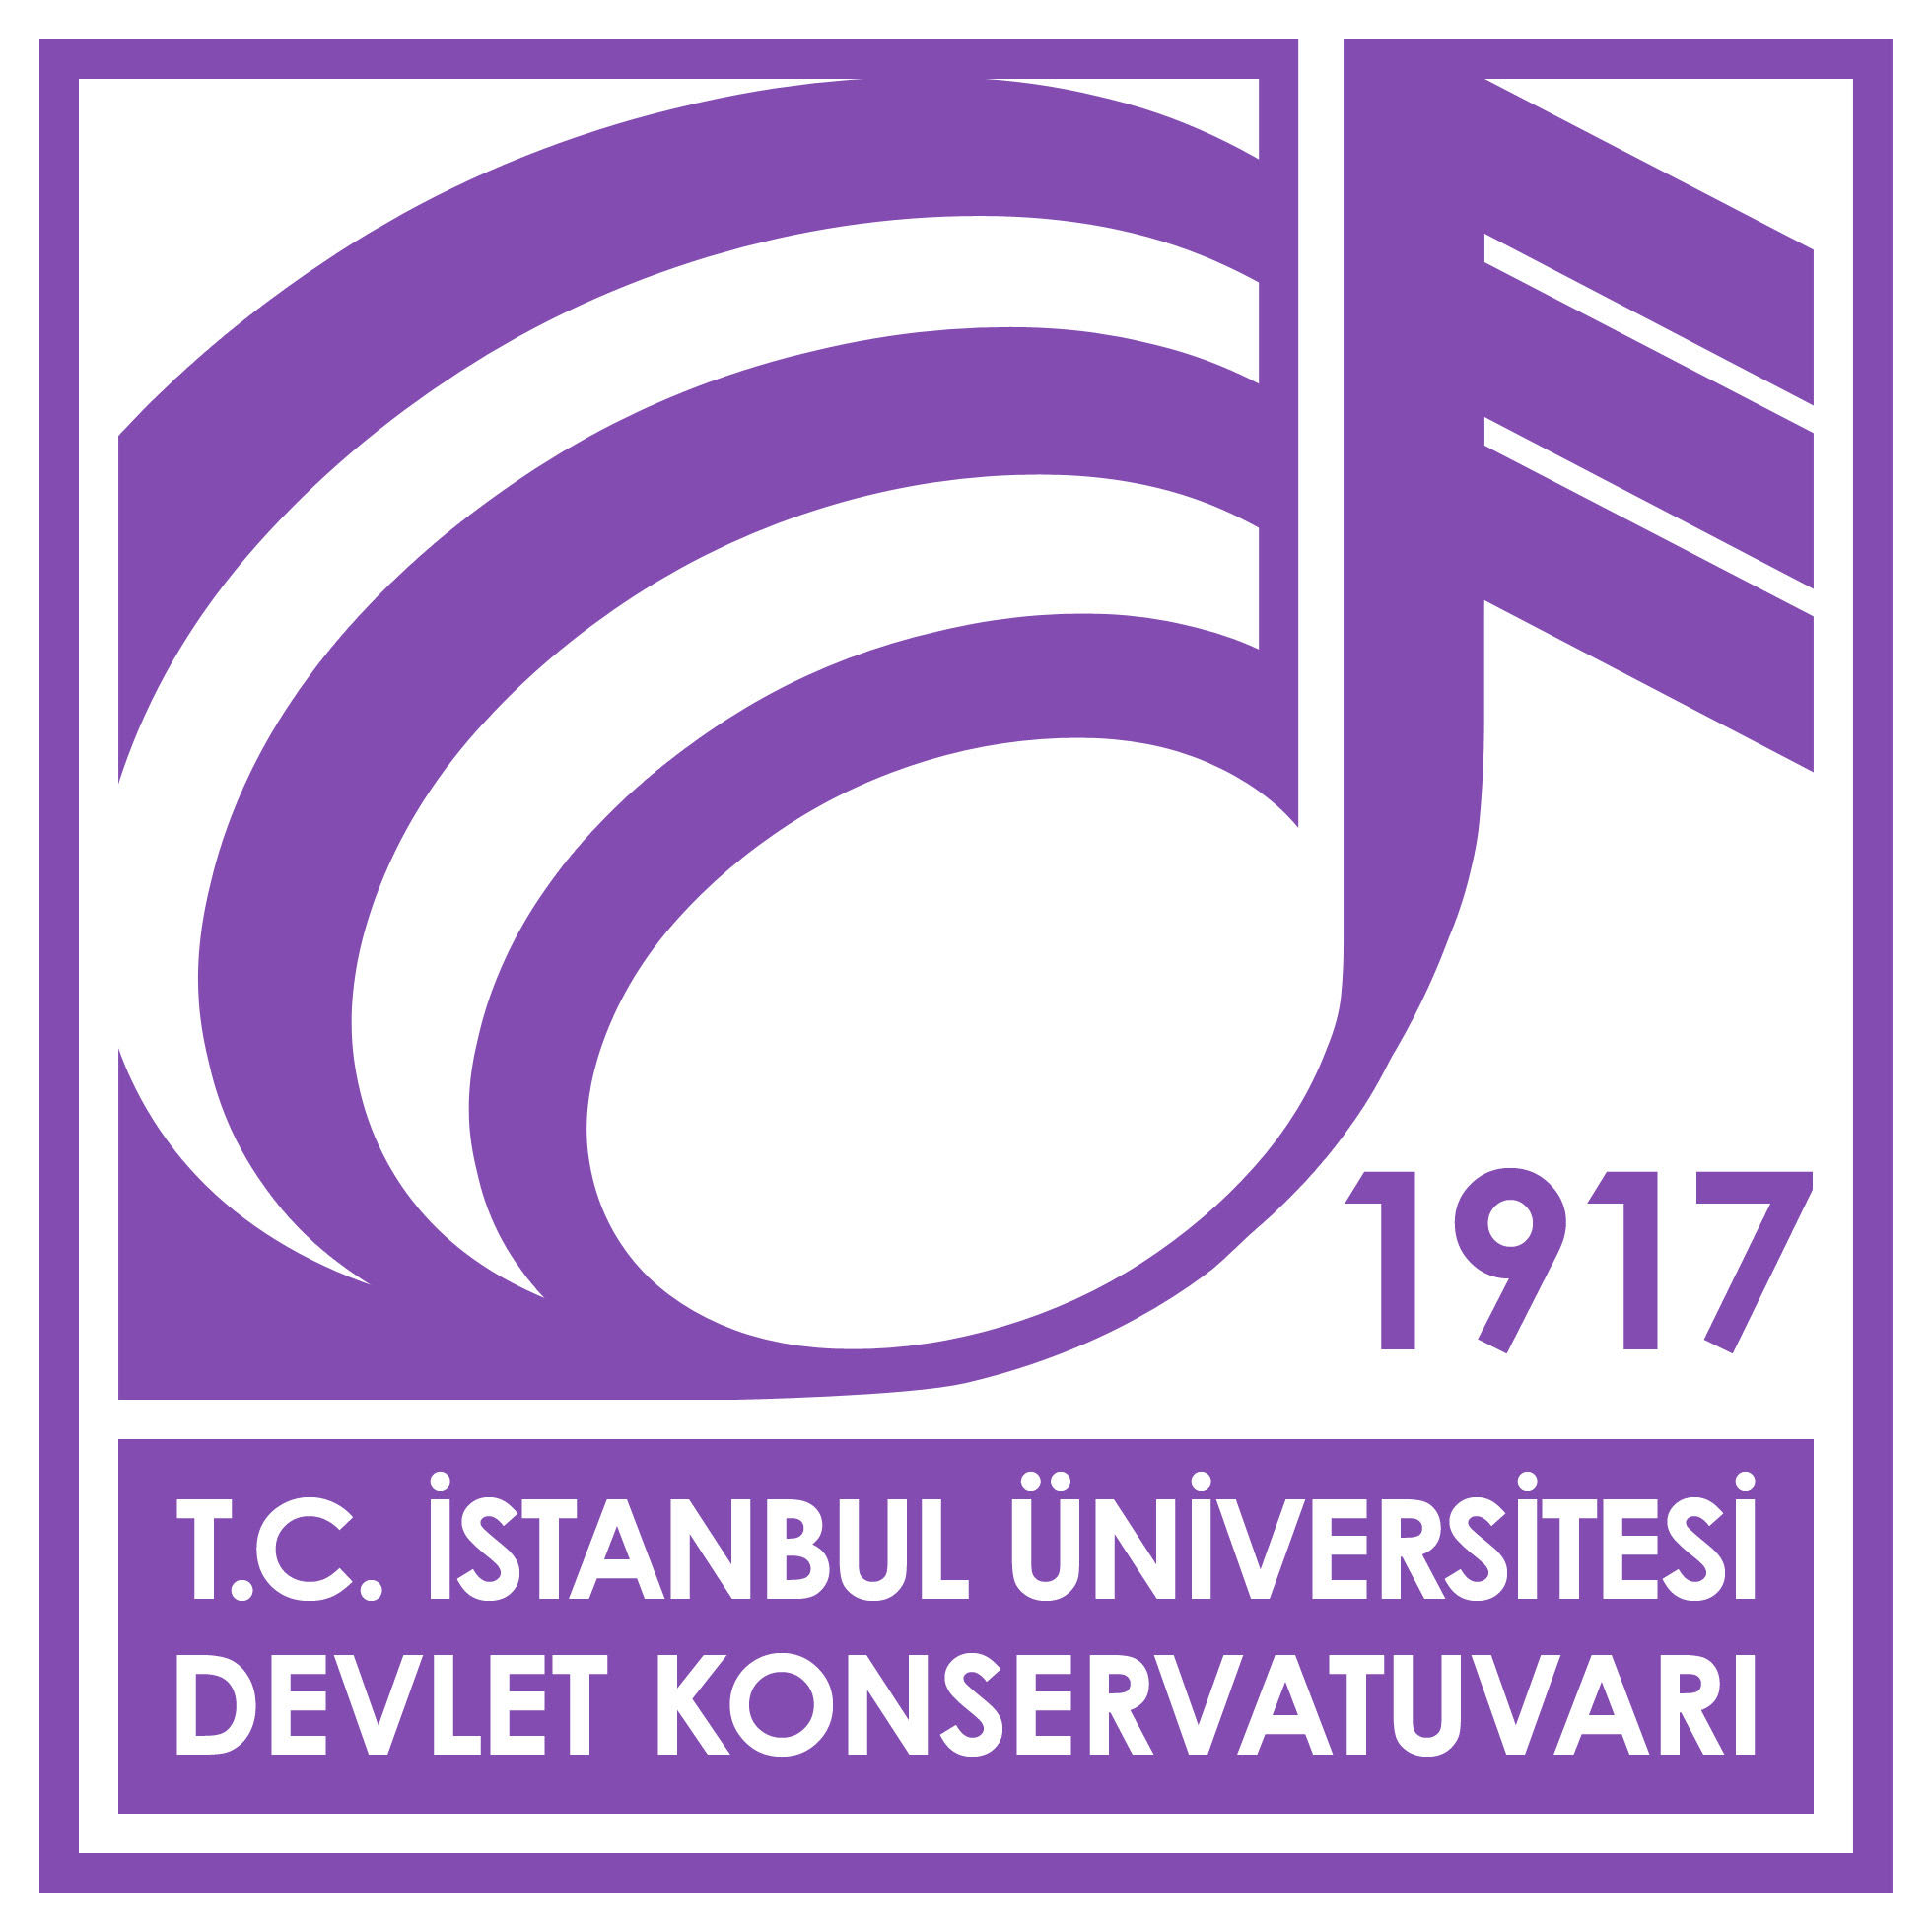 KSPYSV2 logo